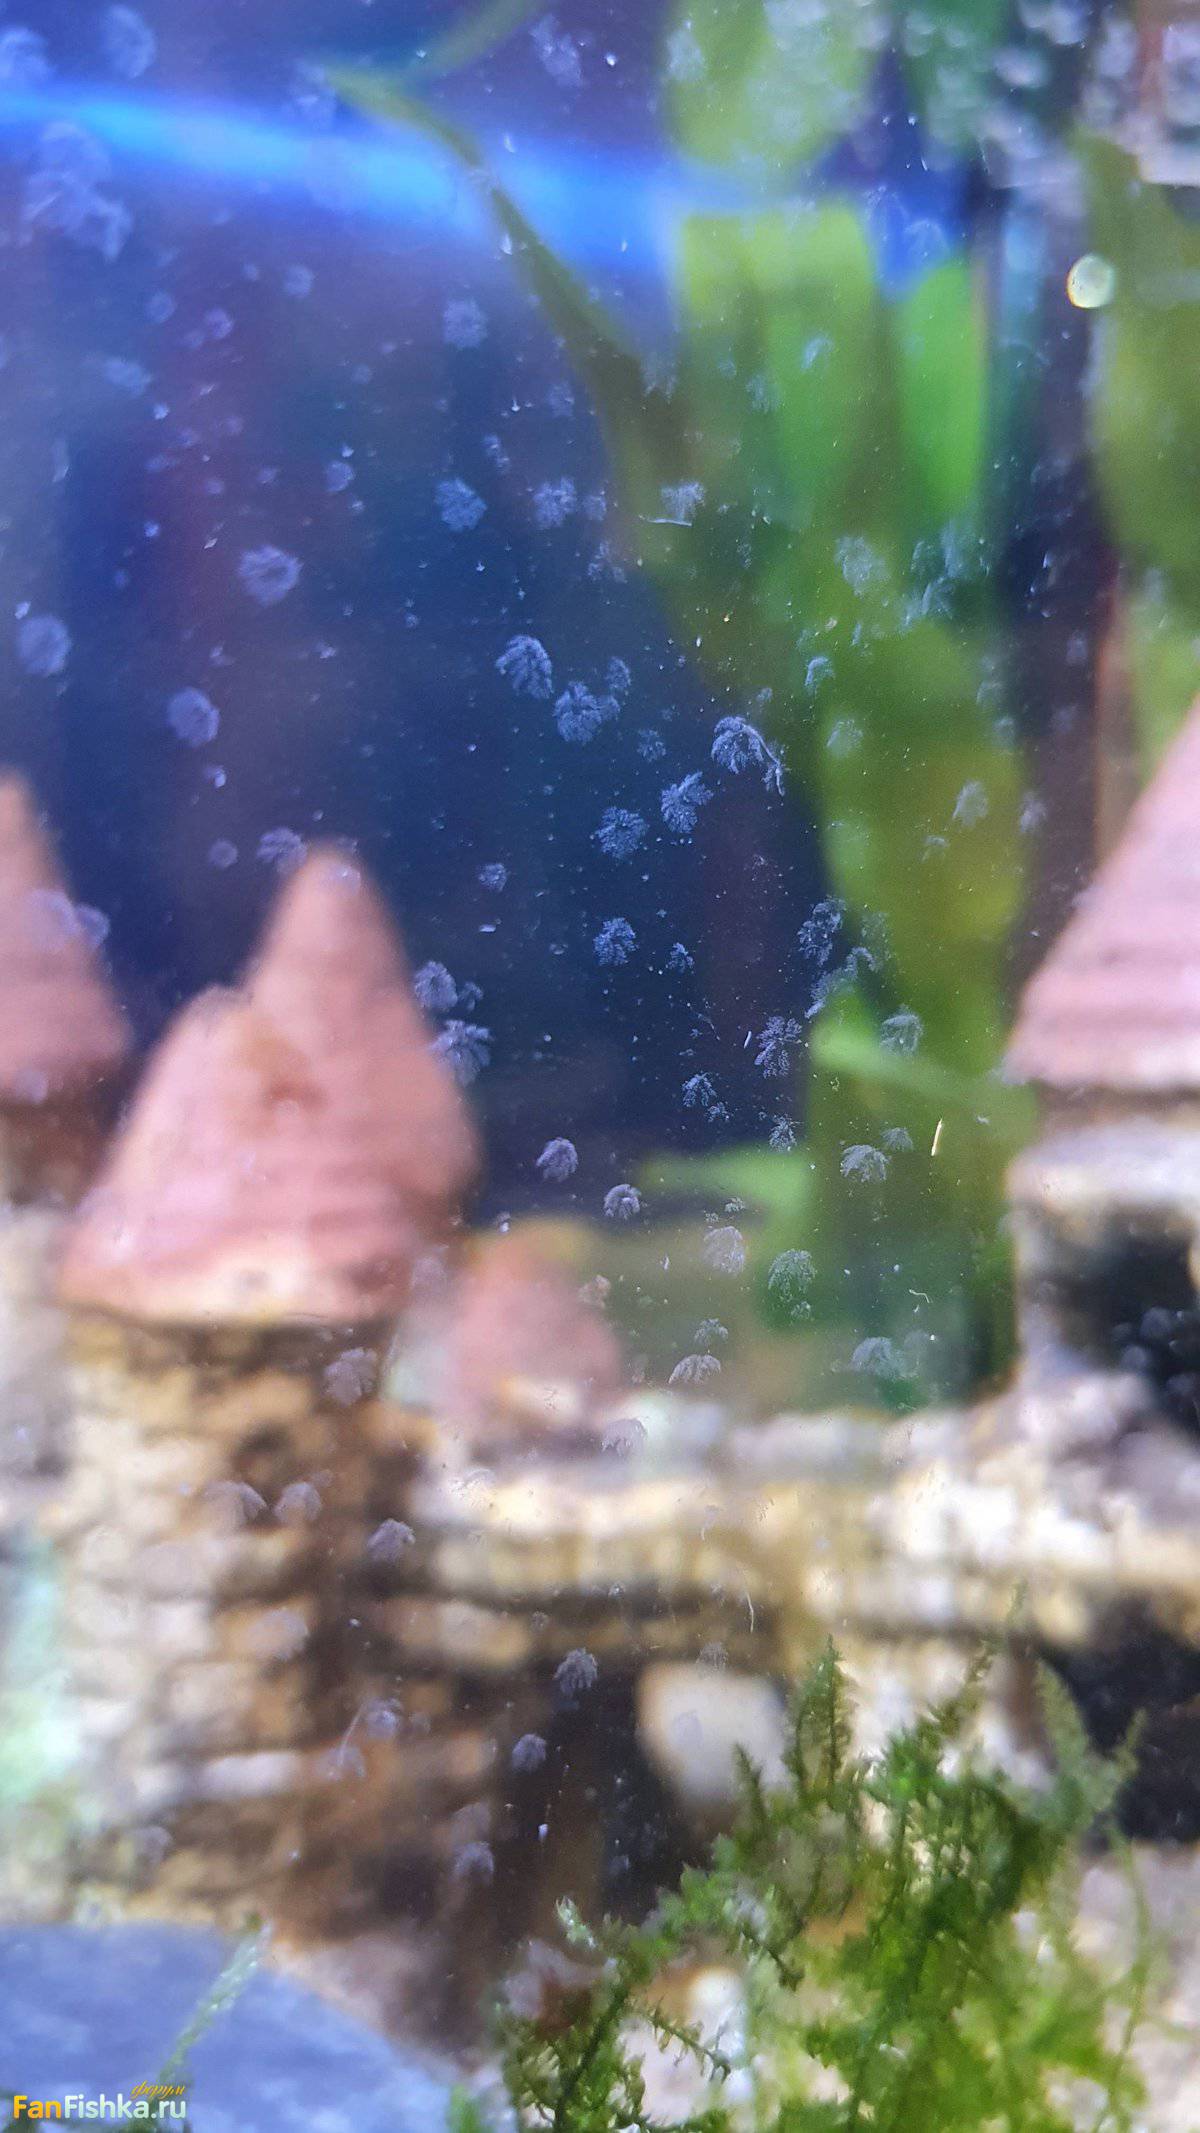 Пузырьки в аквариуме на стенках после смены воды